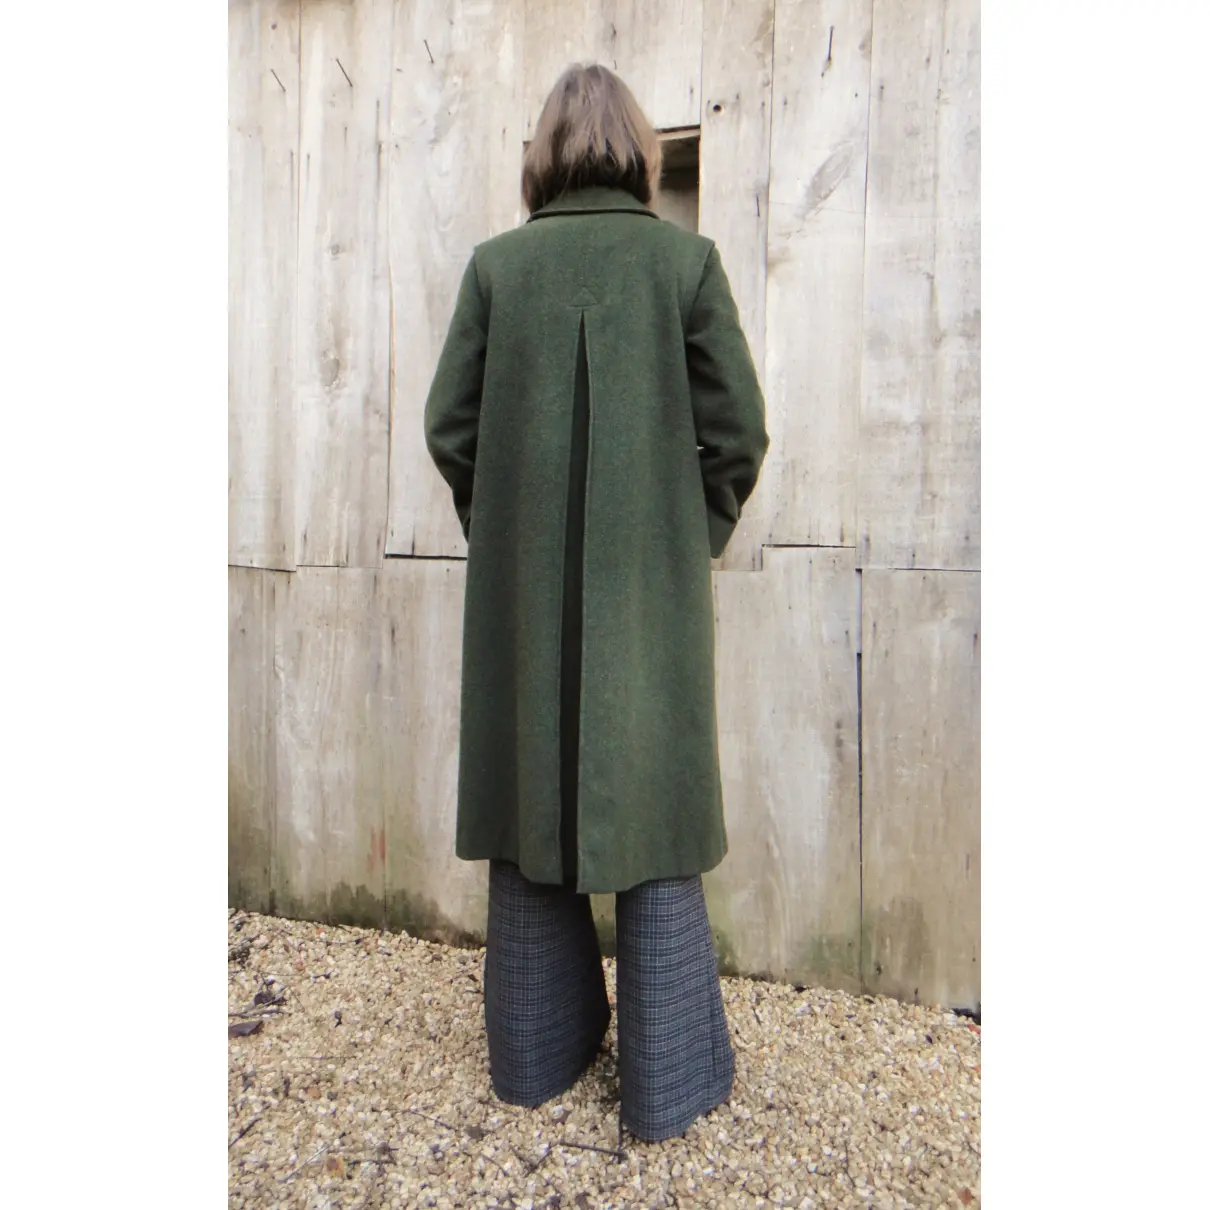 Buy Schneiders Wool coat online